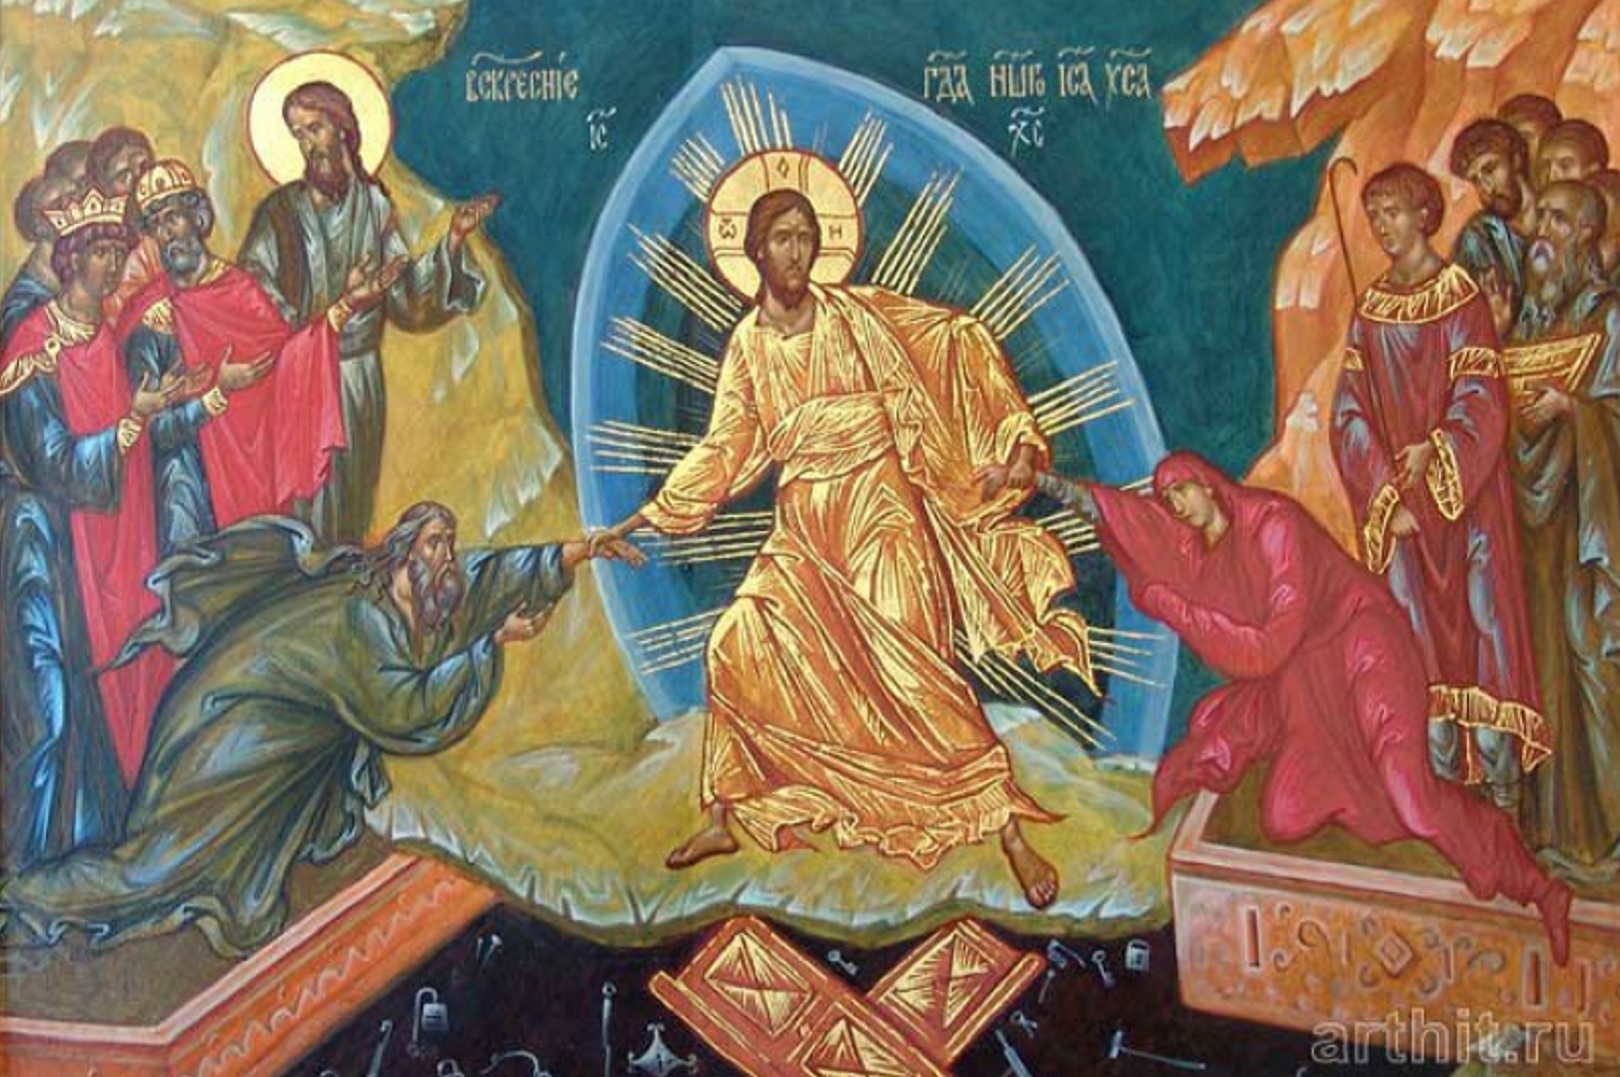 Что делать в воскресенье православному